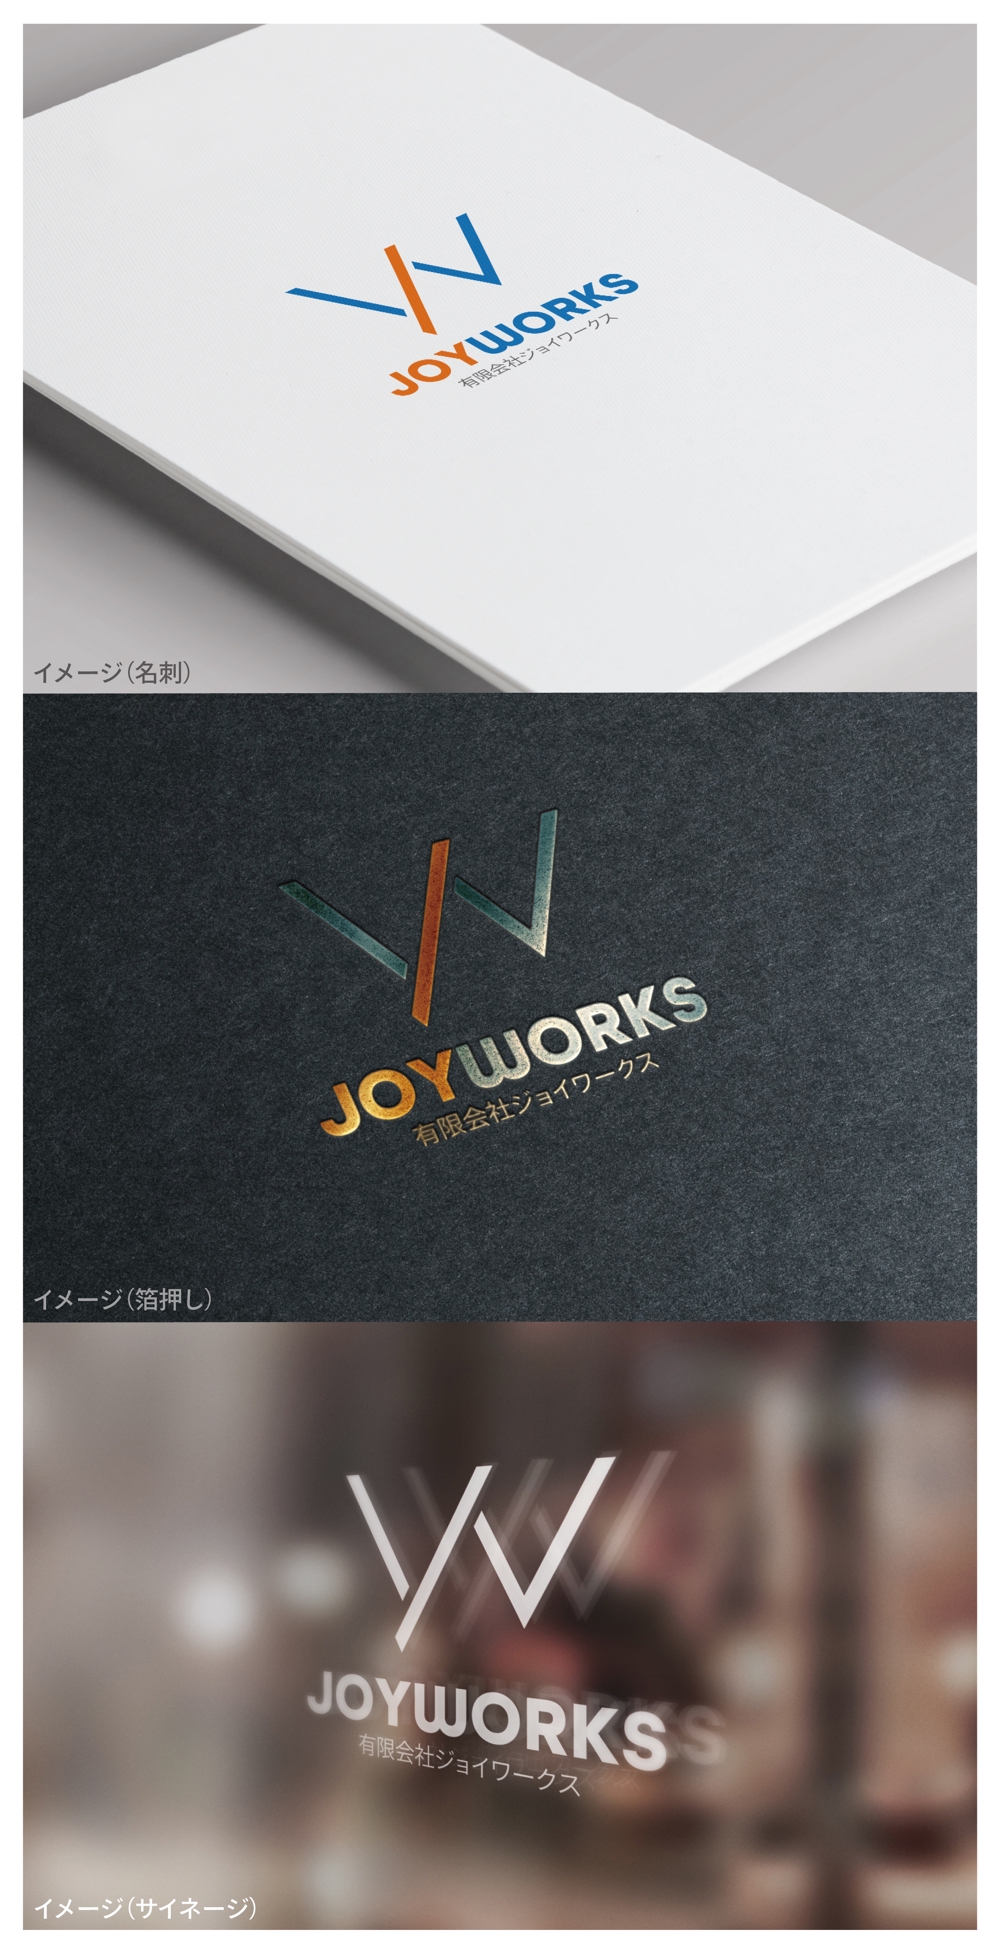 JOYWORKS_logo01_01.jpg